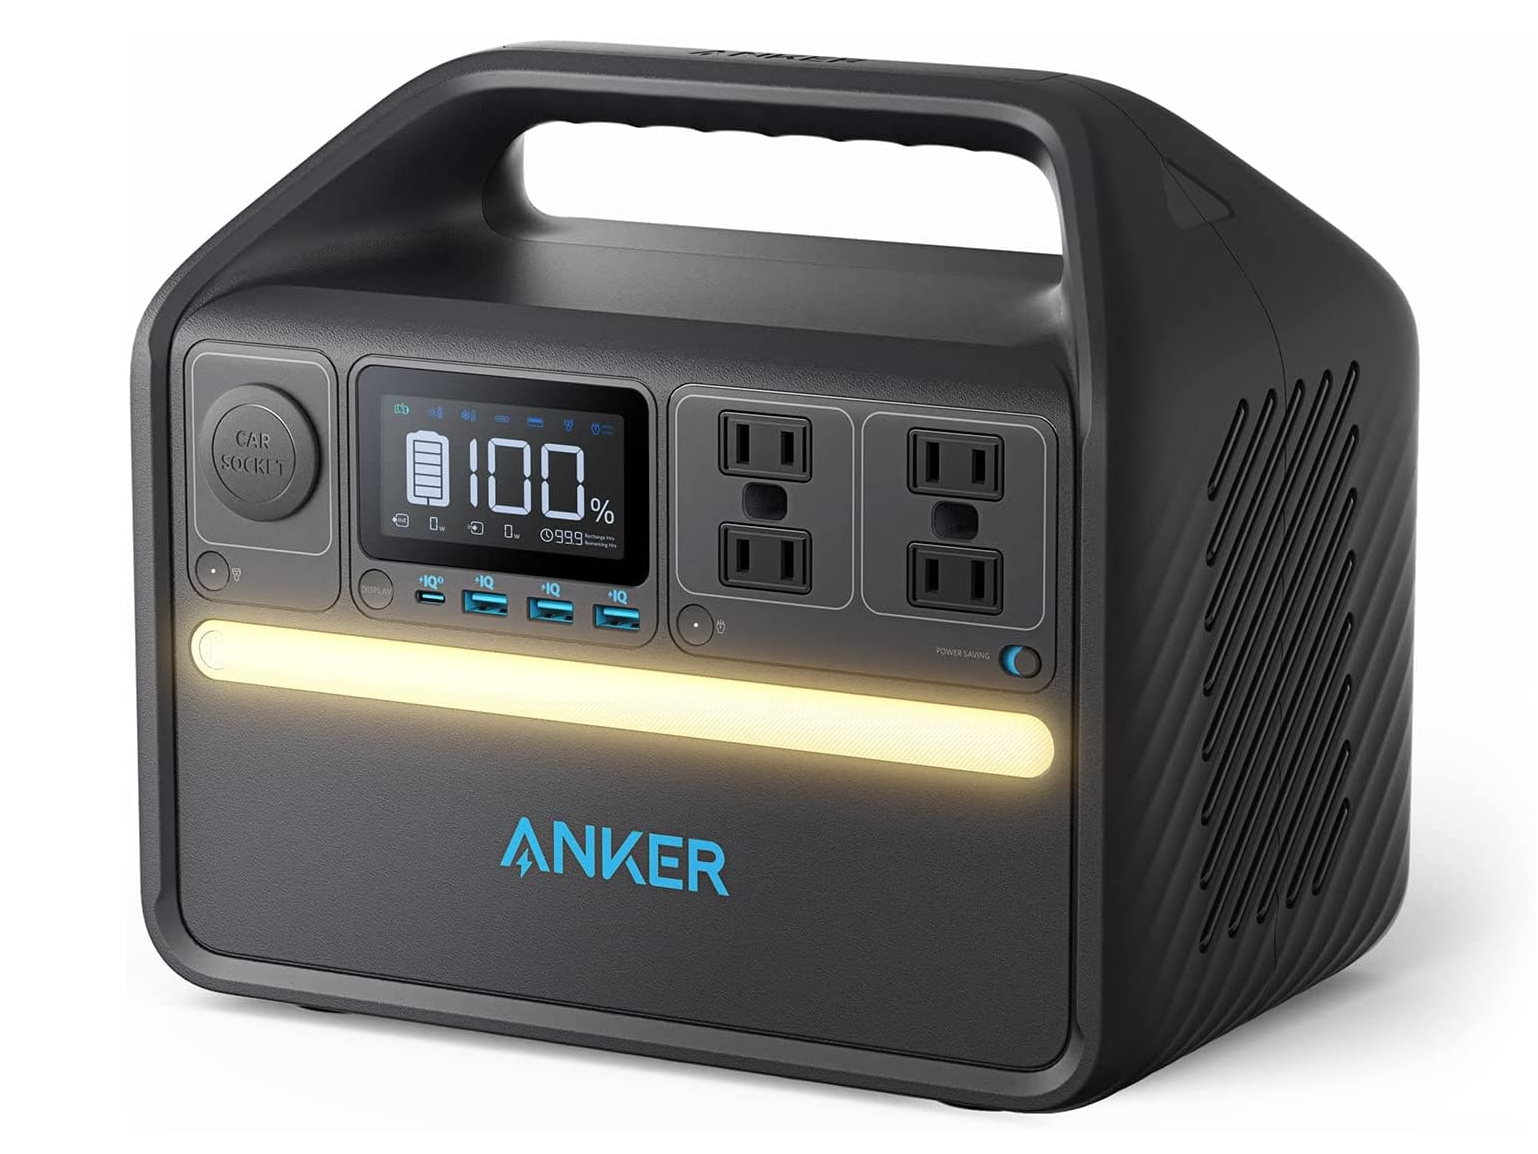 【本日みつけたお買い得品】Ankerのポータブル電源が1万6千円引き